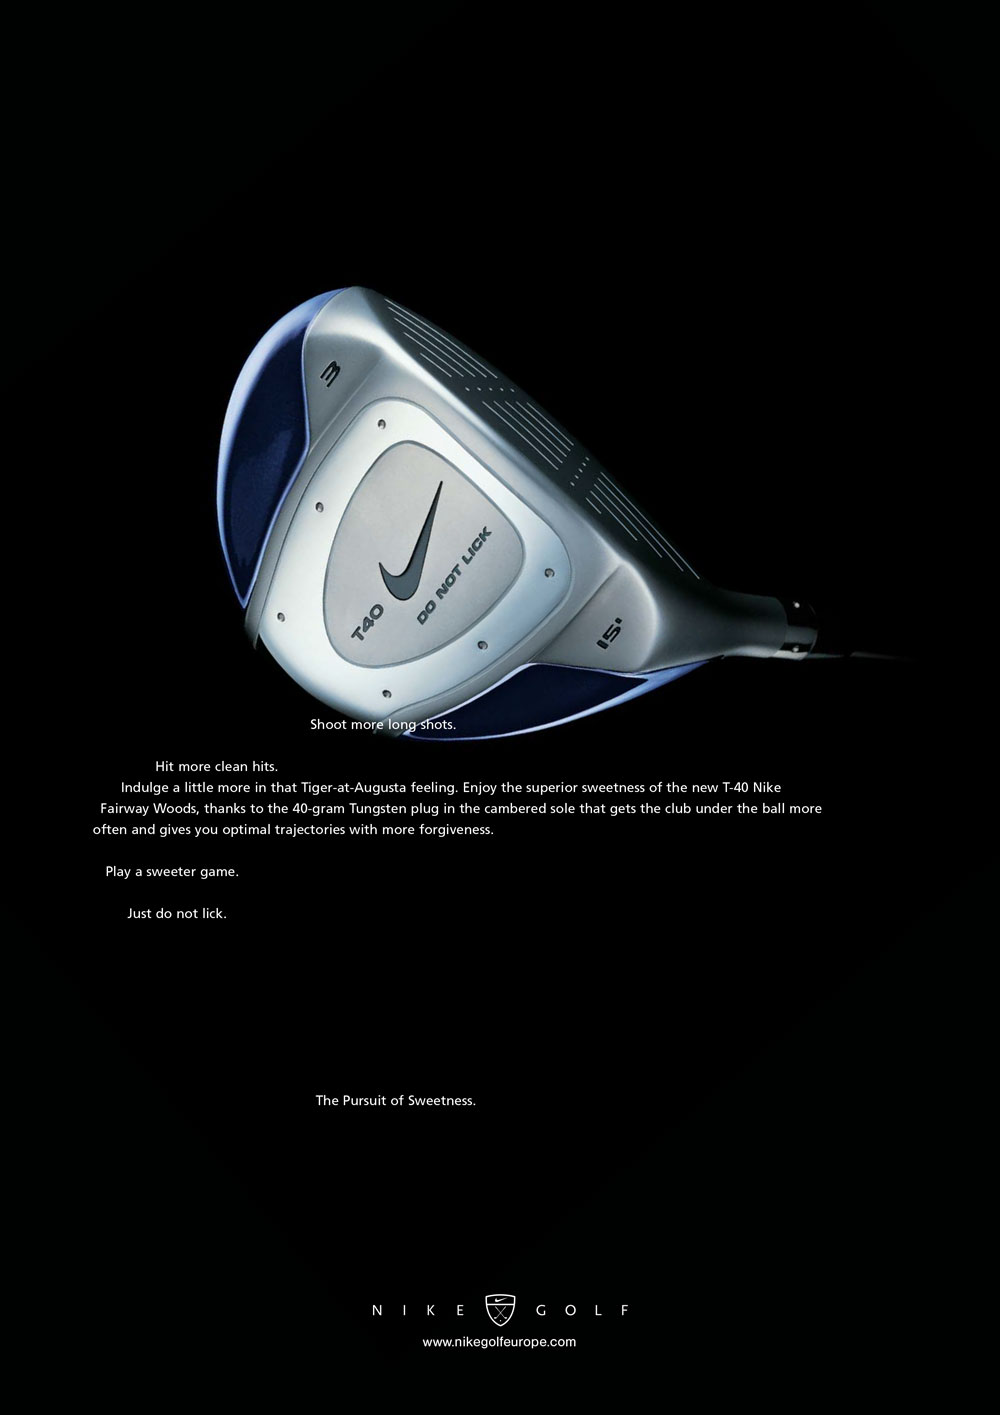 Nike-Golf-print-01